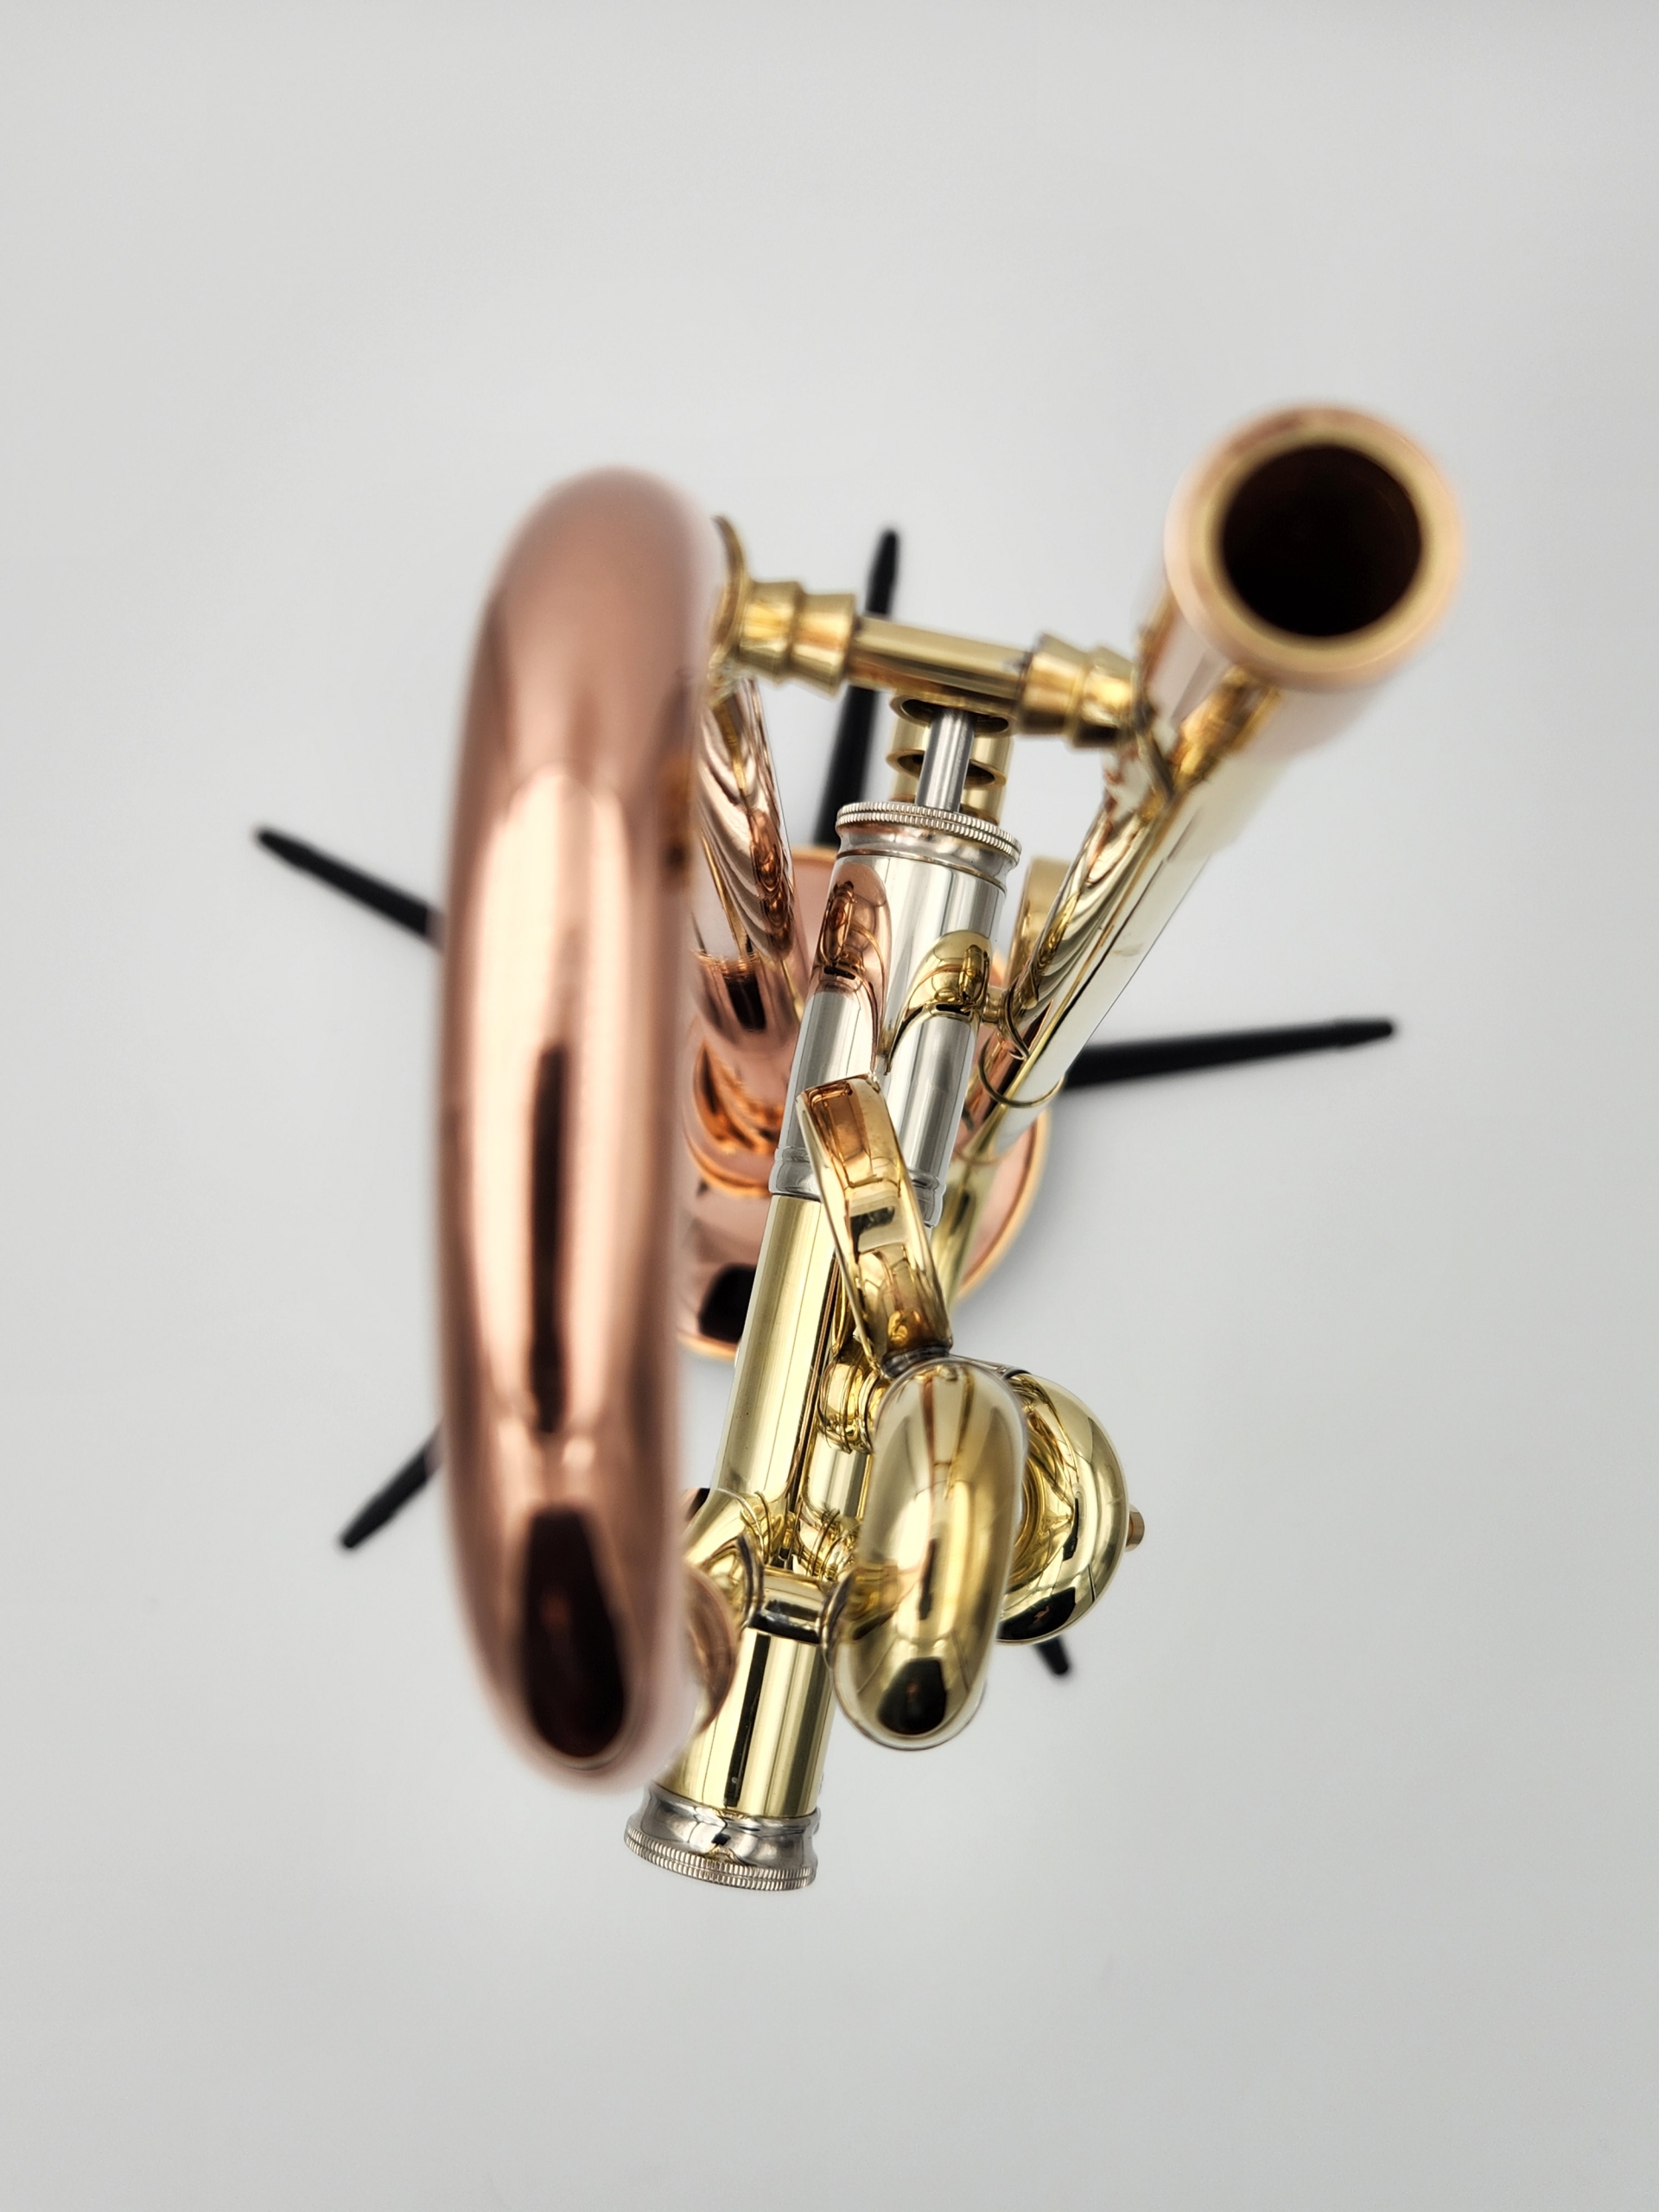 Del Quadro Custom Grande Campana Trumpet with a Bright Hand Polish Finish